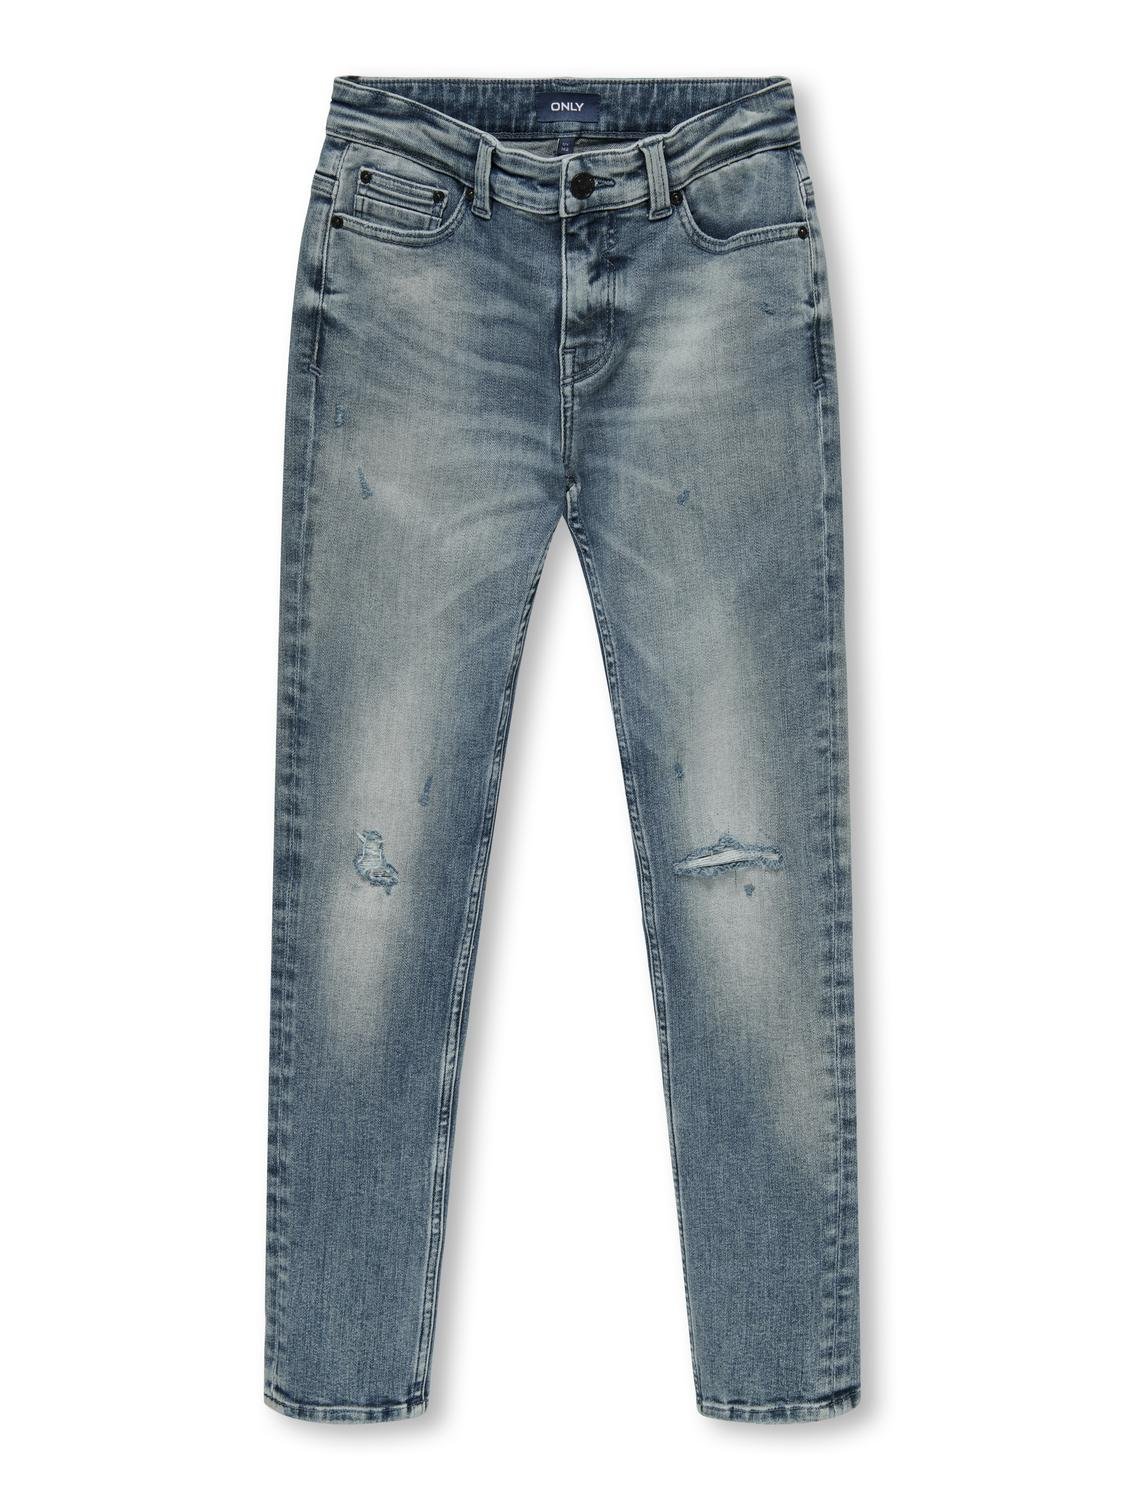 ONLY Verjüngter Slim Fit Jeans -Special Bright Blue Denim - 15317578